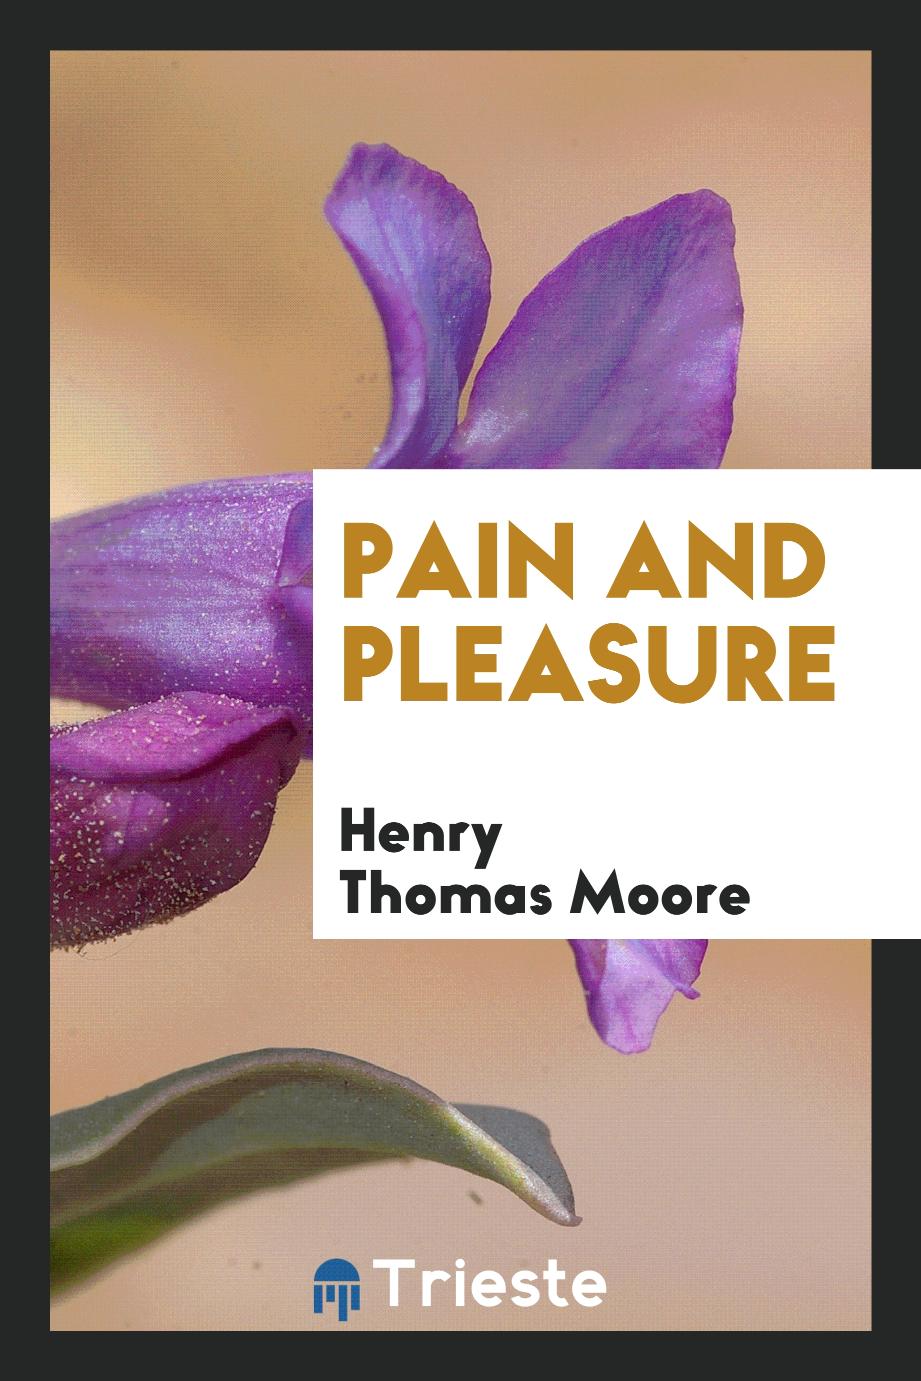 Pain and pleasure